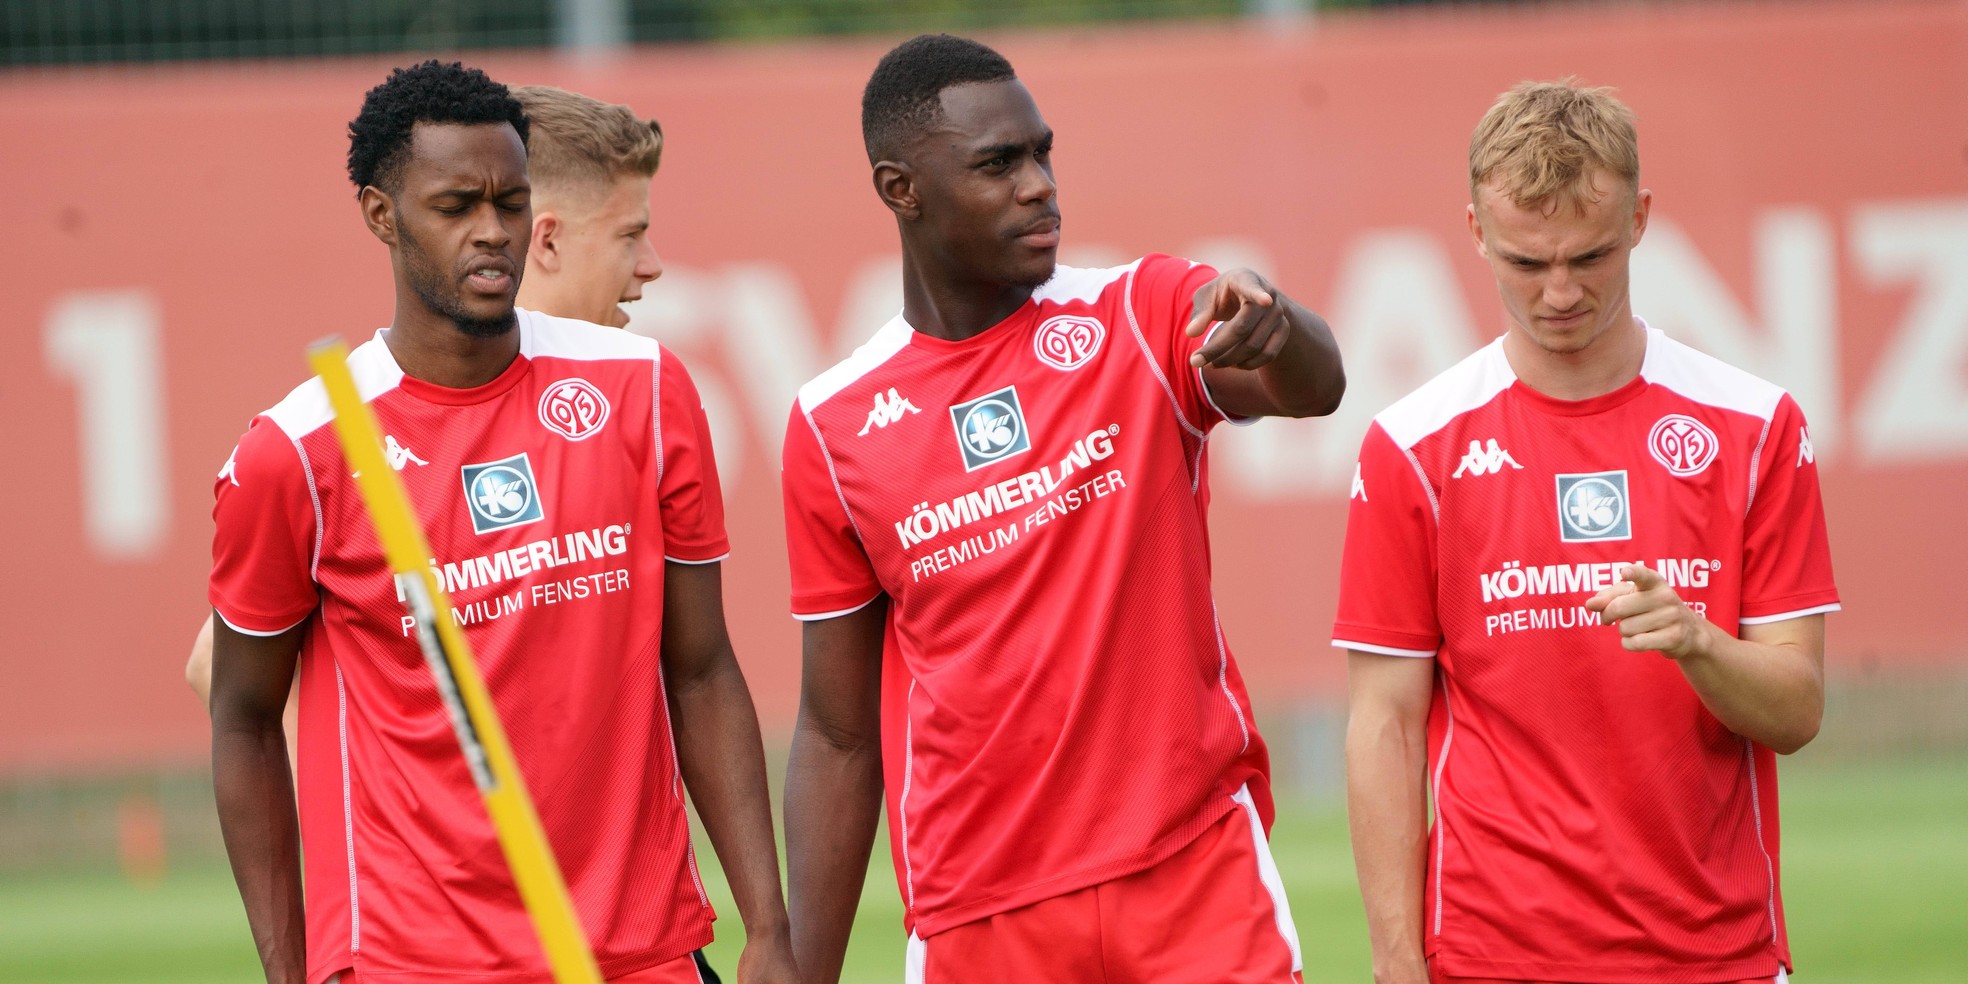 Bevorstehender Transfer: Moussa Niakhate wechselt wohl zu Nottingham Forest